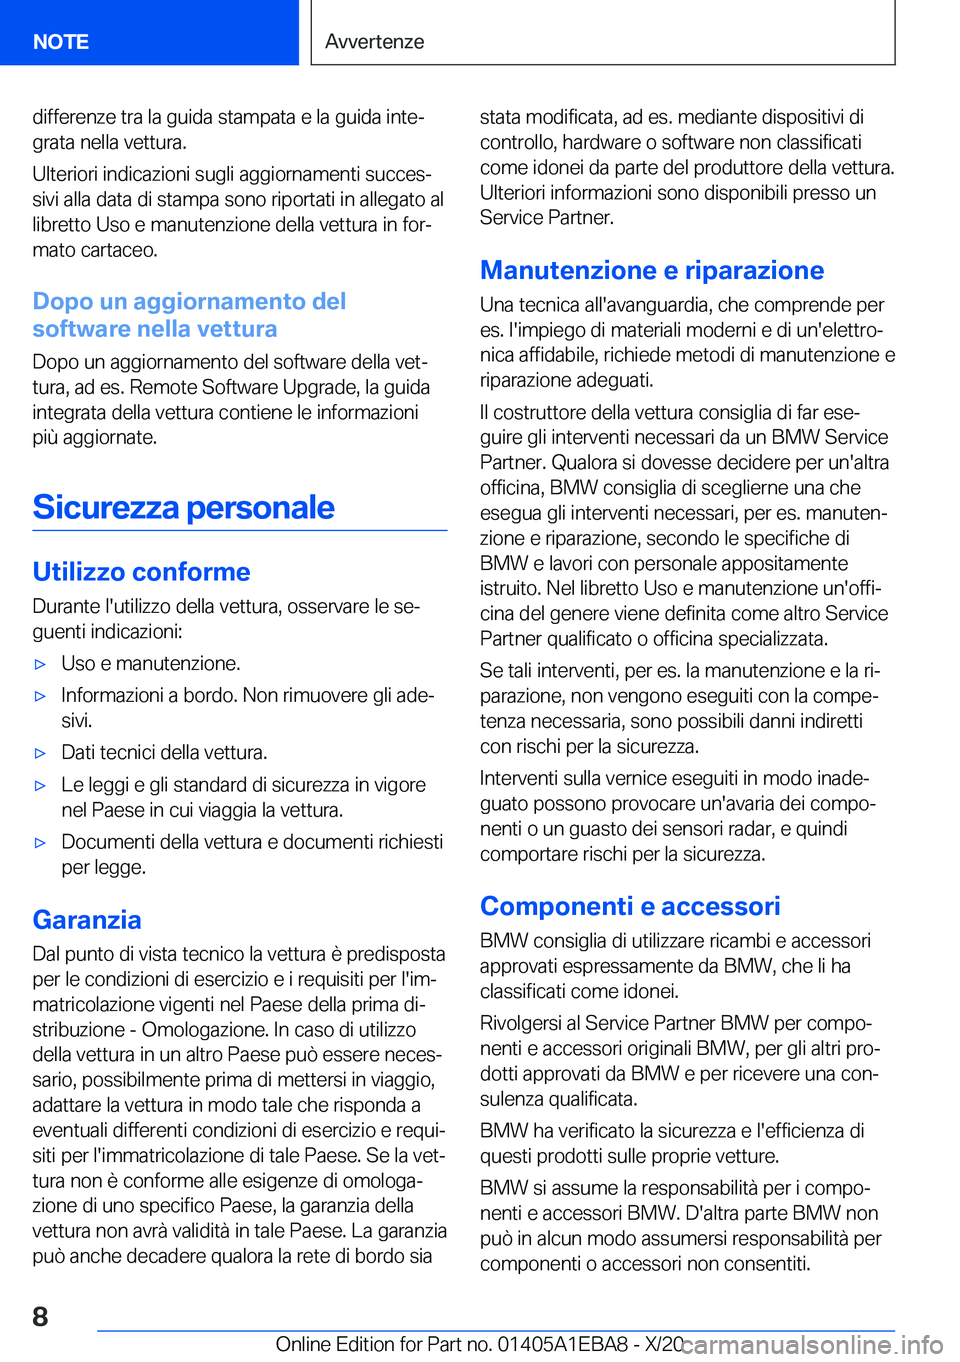 BMW 3 SERIES 2021  Libretti Di Uso E manutenzione (in Italian) �d�i�f�f�e�r�e�n�z�e��t�r�a��l�a��g�u�i�d�a��s�t�a�m�p�a�t�a��e��l�a��g�u�i�d�a��i�n�t�eª�g�r�a�t�a��n�e�l�l�a��v�e�t�t�u�r�a�.
�U�l�t�e�r�i�o�r�i��i�n�d�i�c�a�z�i�o�n�i��s�u�g�l�i��a�g